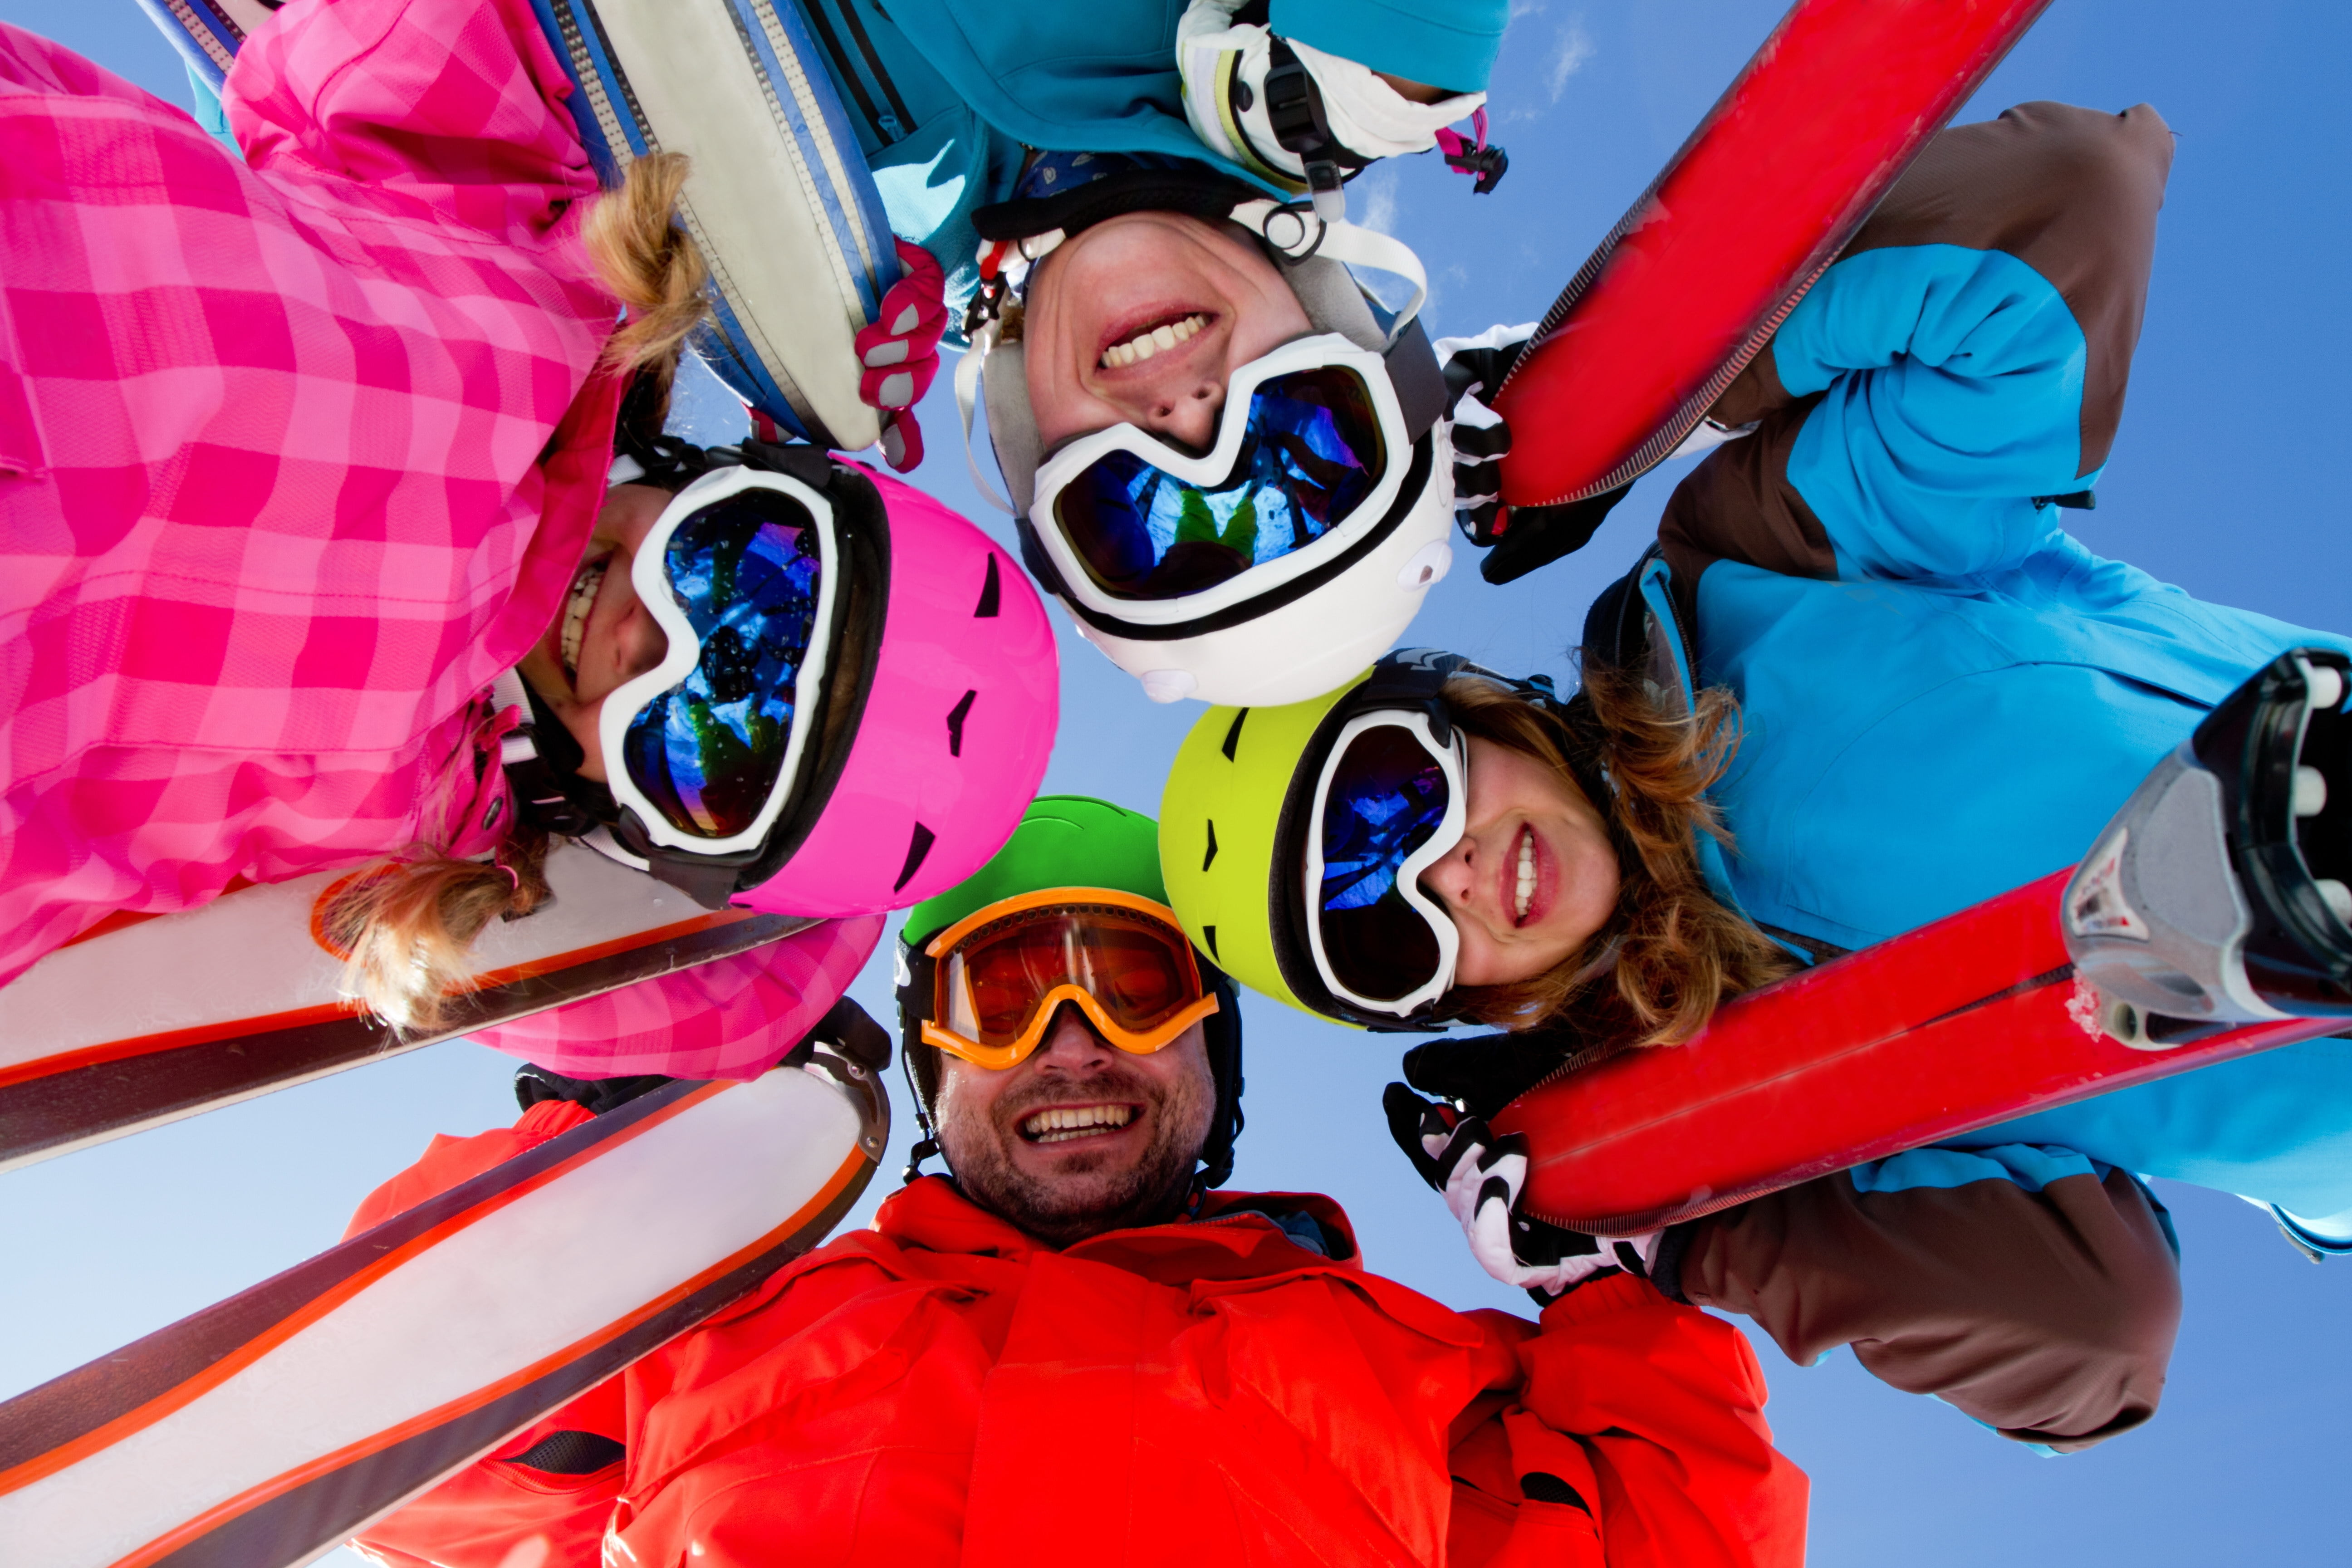 Компания горнолыжный курорт. Горнолыжники и сноубордисты. Веселые горнолыжники. Горнолыжный спорт. Сноуборд компания.